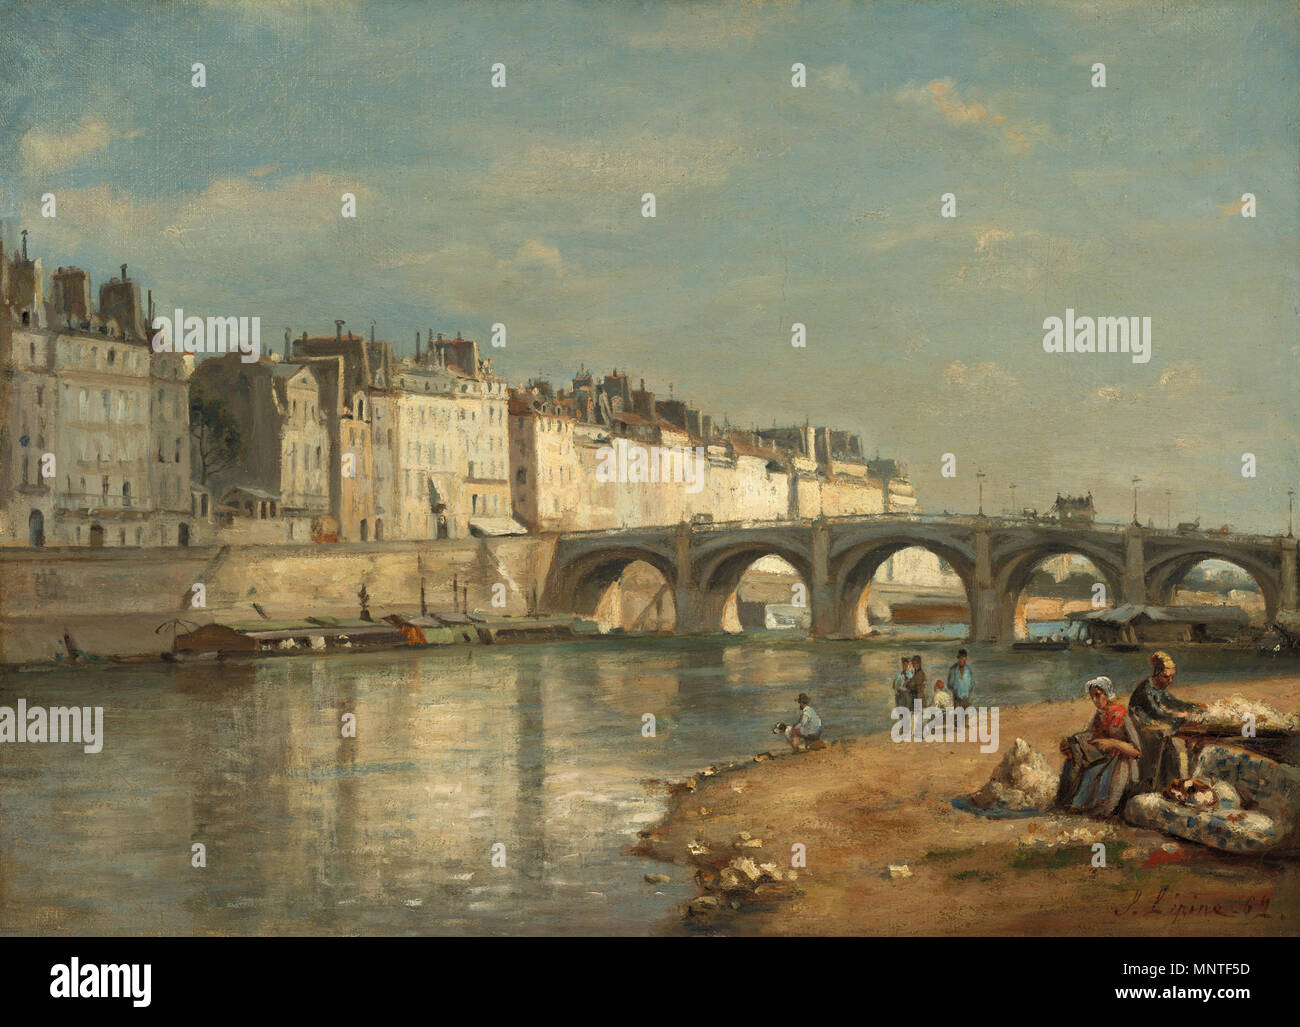 Pittura; olio su tela; complessivo: 40,2 x 55,1 cm (15 13/16 x 21 11/16 in.) incorniciato: 57,8 x 73 x 6,9 cm (22 3/4 x 28 3/4 x 2 11/16 in.); Pont de la Tournelle, Parigi 1862. 1013 Pont de la Tournelle, Paris-1862-Stanislas Lepine Foto Stock